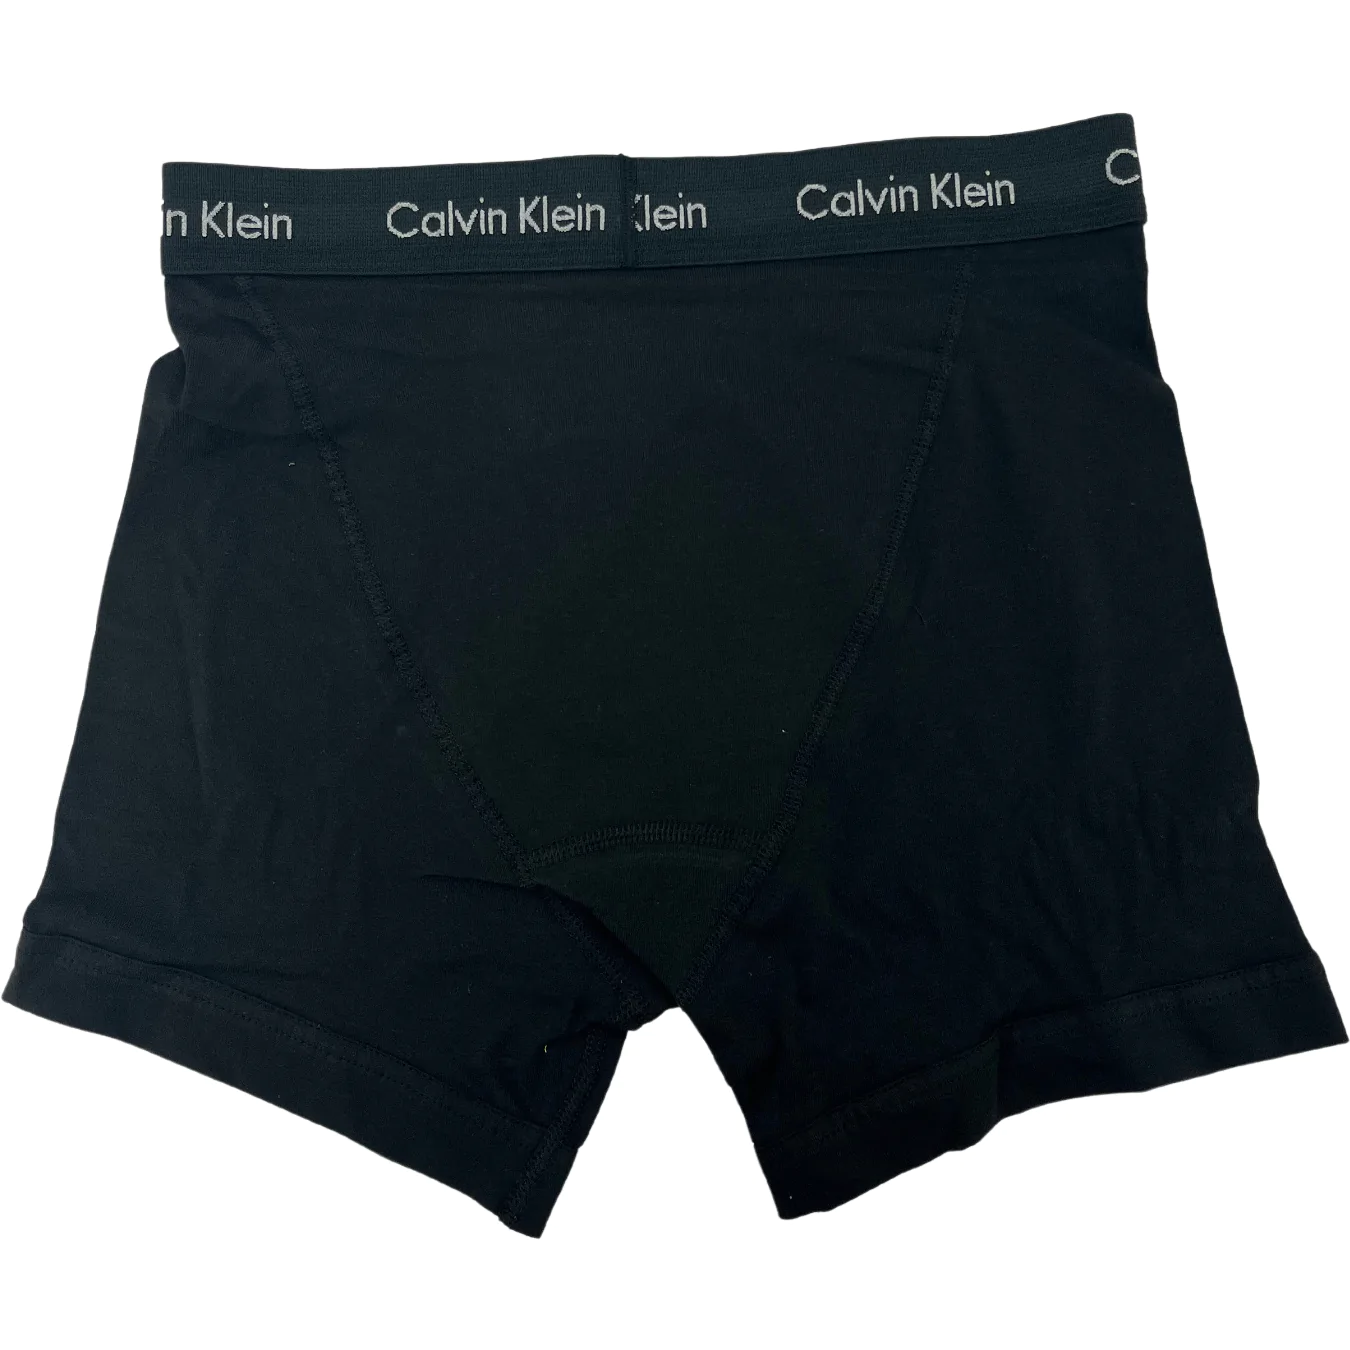 CALVIN KLEIN Calvin Klein BODY - Boxers - Men's - black - Private Sport Shop